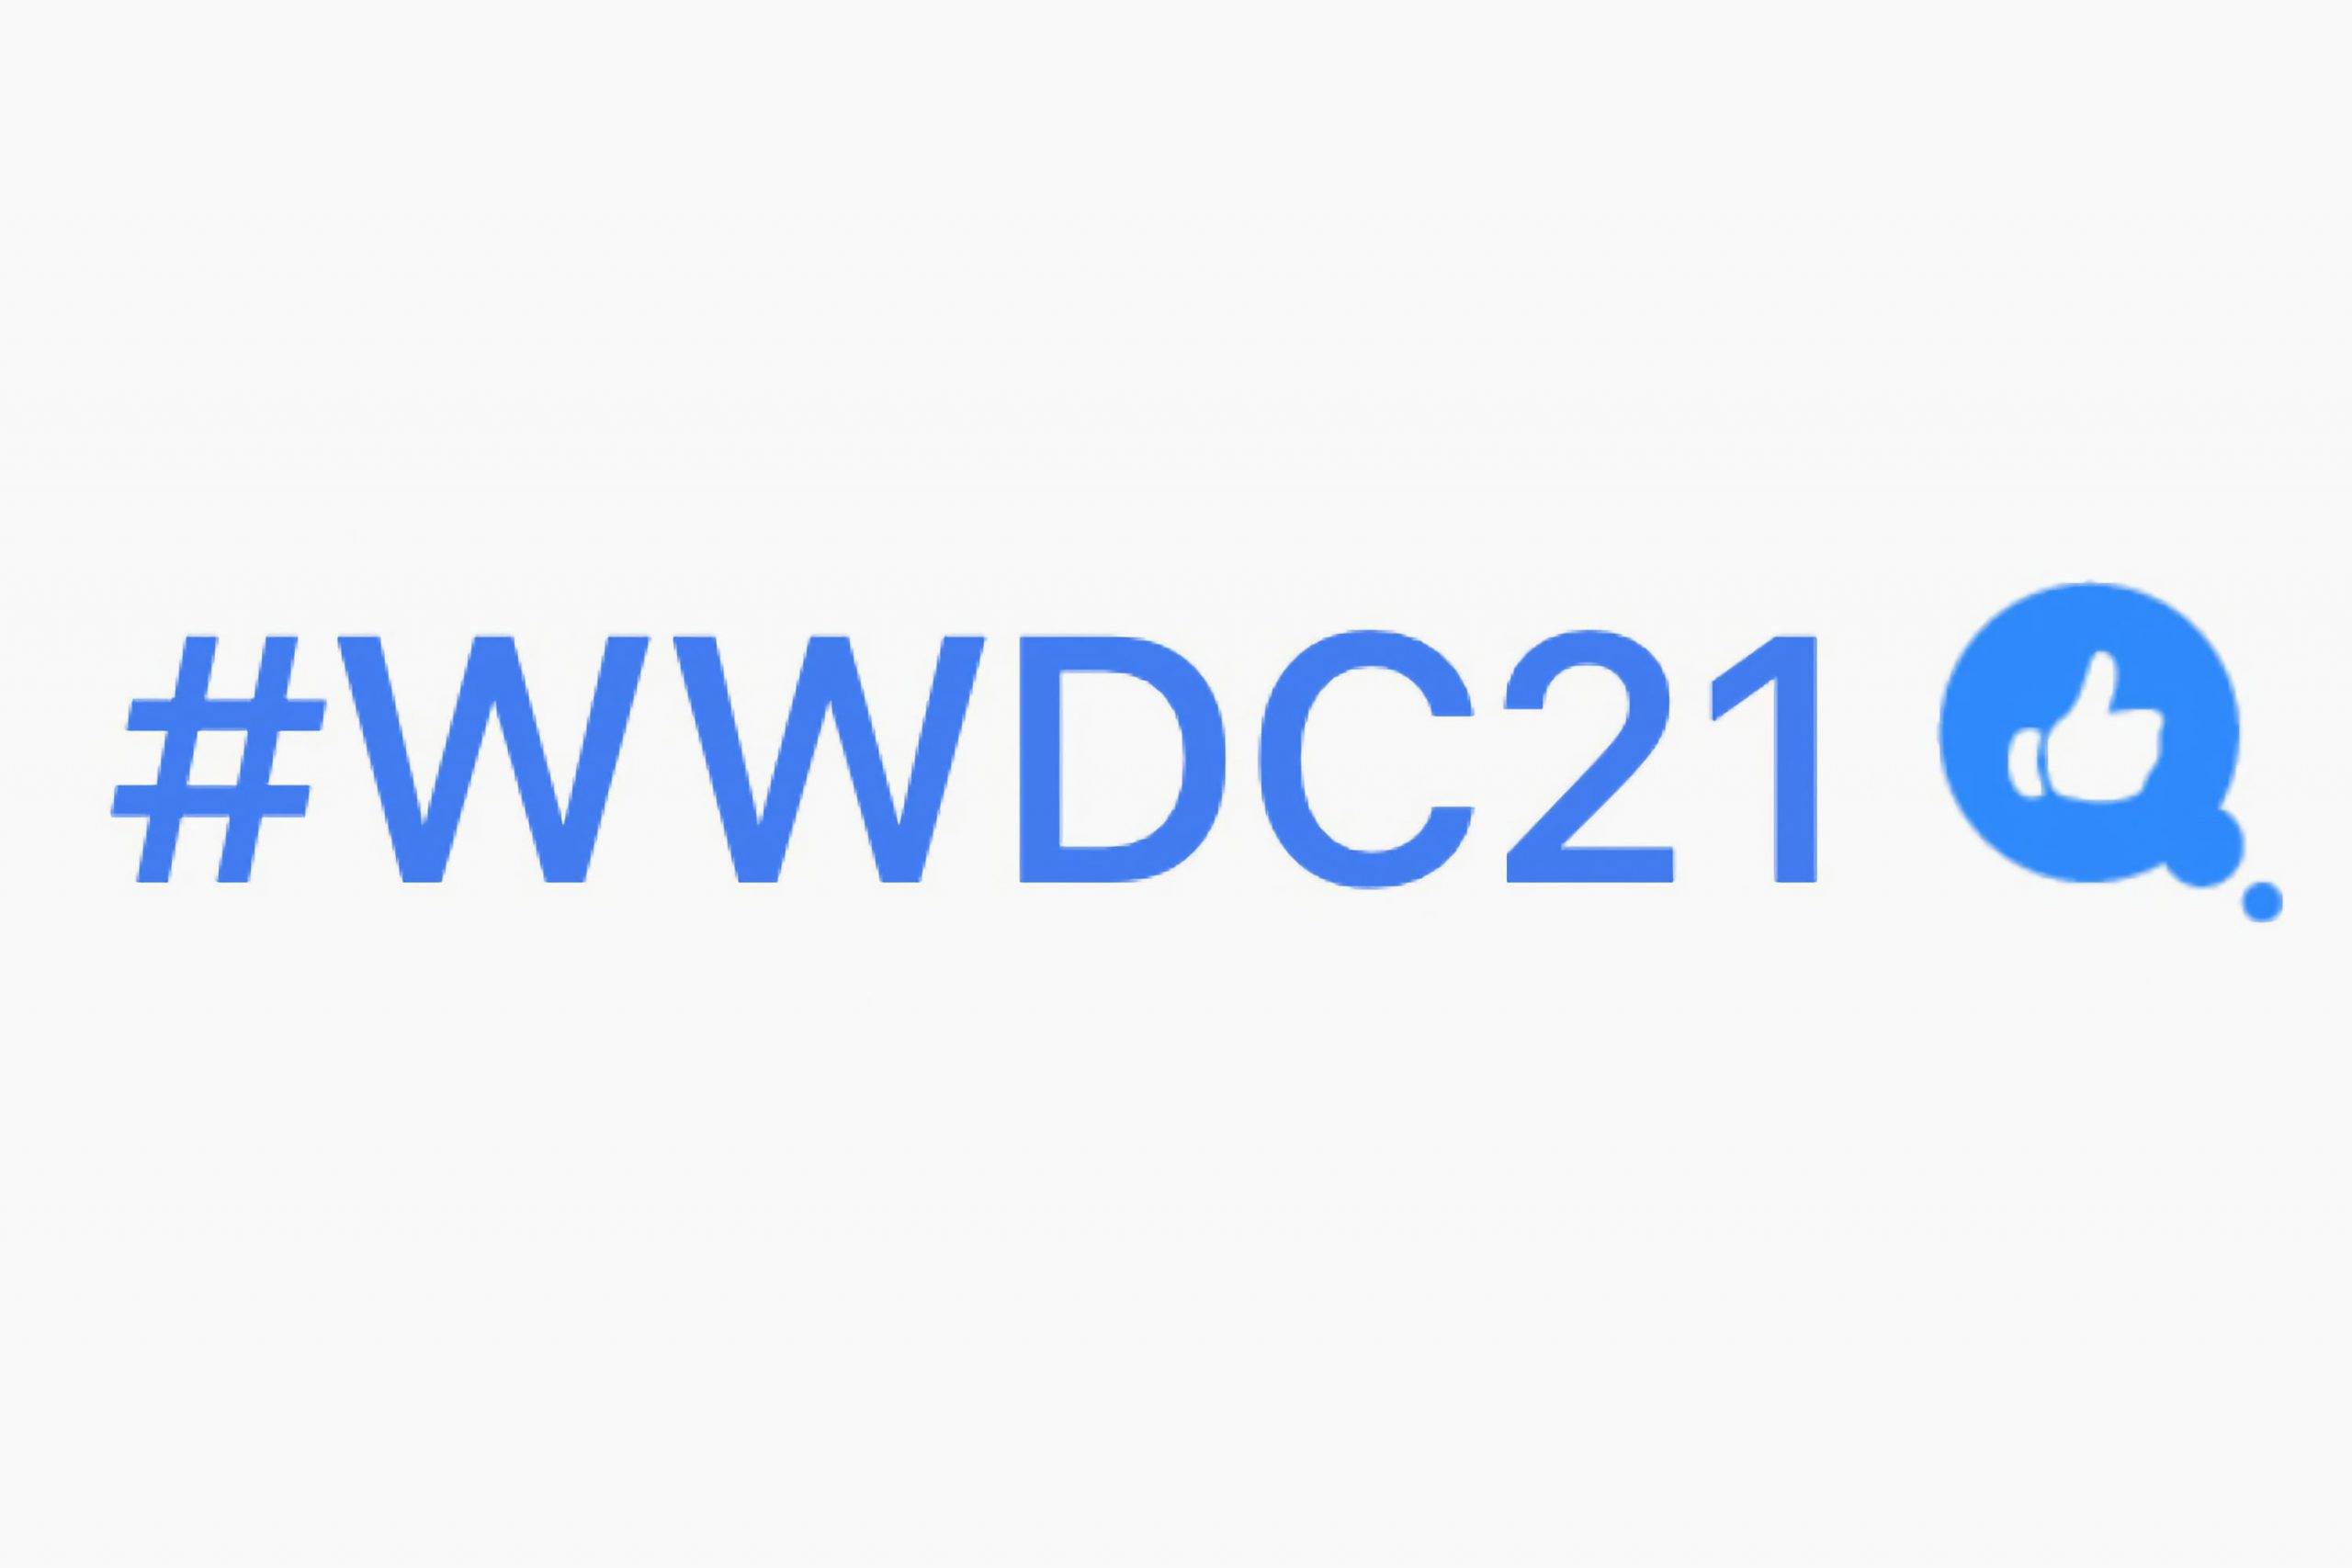 Apple zmienia wygląd hashtagu WWDC21 na Twitterze polecane, ciekawostki WWDC 2021, Twitter, hashtag, Apple  Dzień przed oficjalną prezentacją iOS 15, iPadOS 15, Apple zmieniło nieco wygląd hashtagu #WWDC21 na Twitterze. Jak Wam się podoba? WWDC 2021 Twitter Hashflag scaled